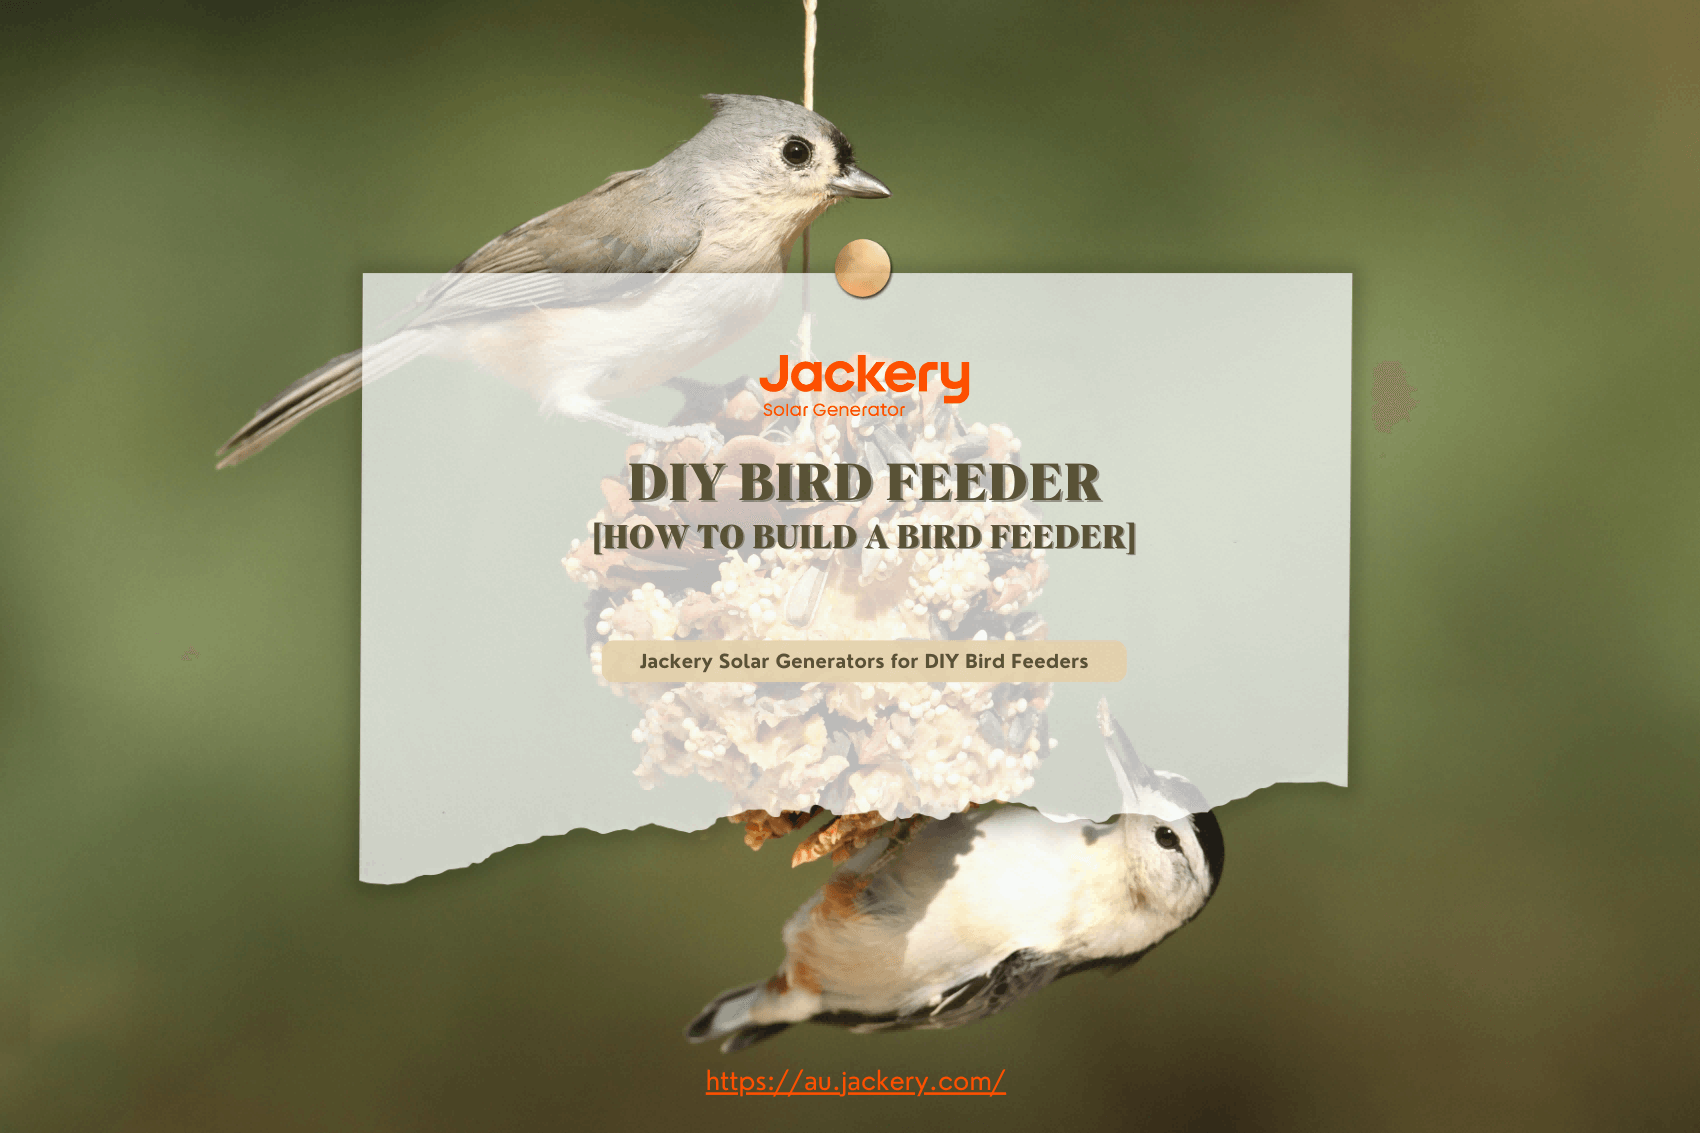 DIY Bird Feeder Guide: How to DIY A Bird Feeder